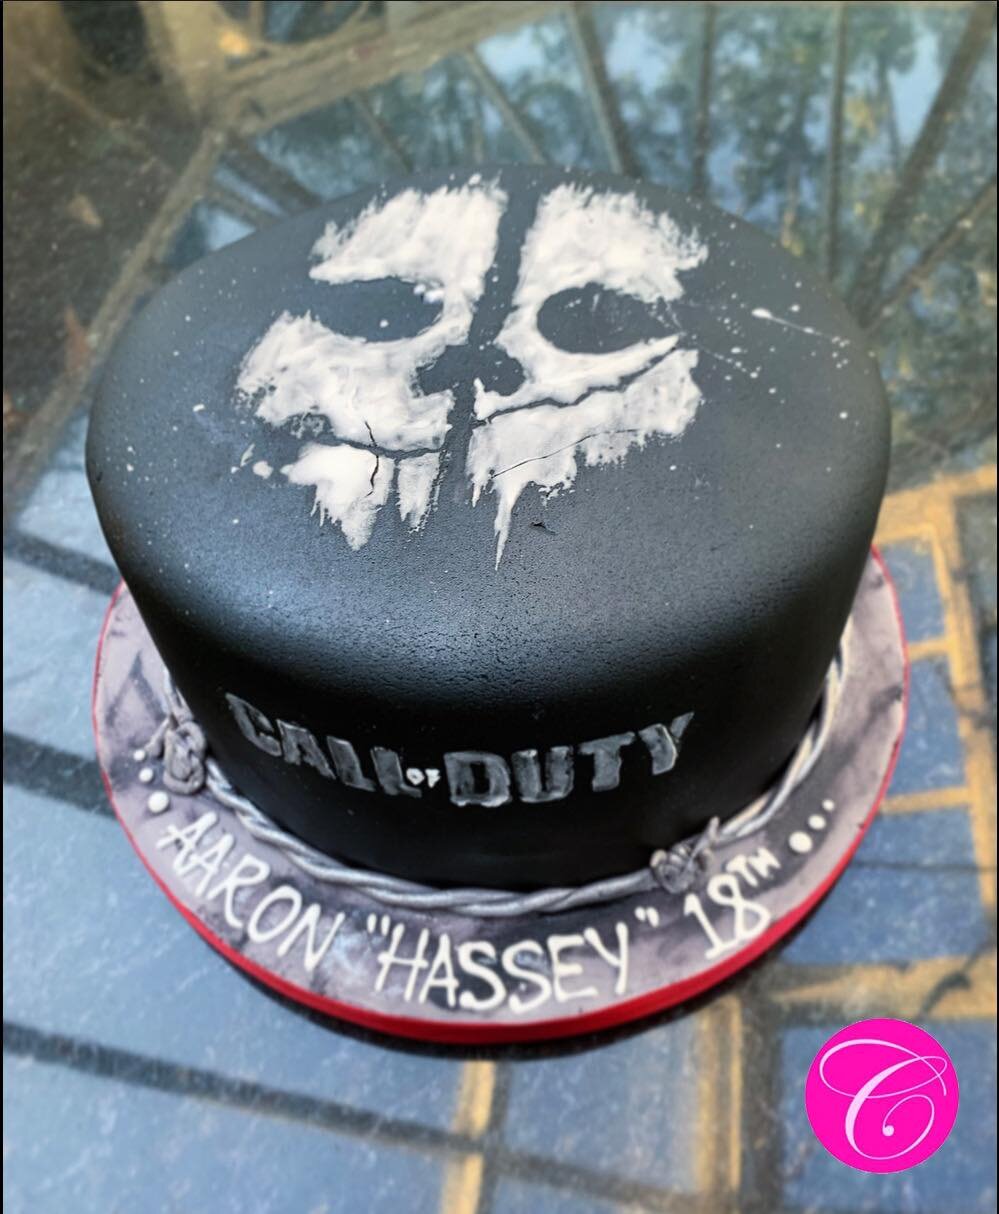 Call of Duty Skull Cake